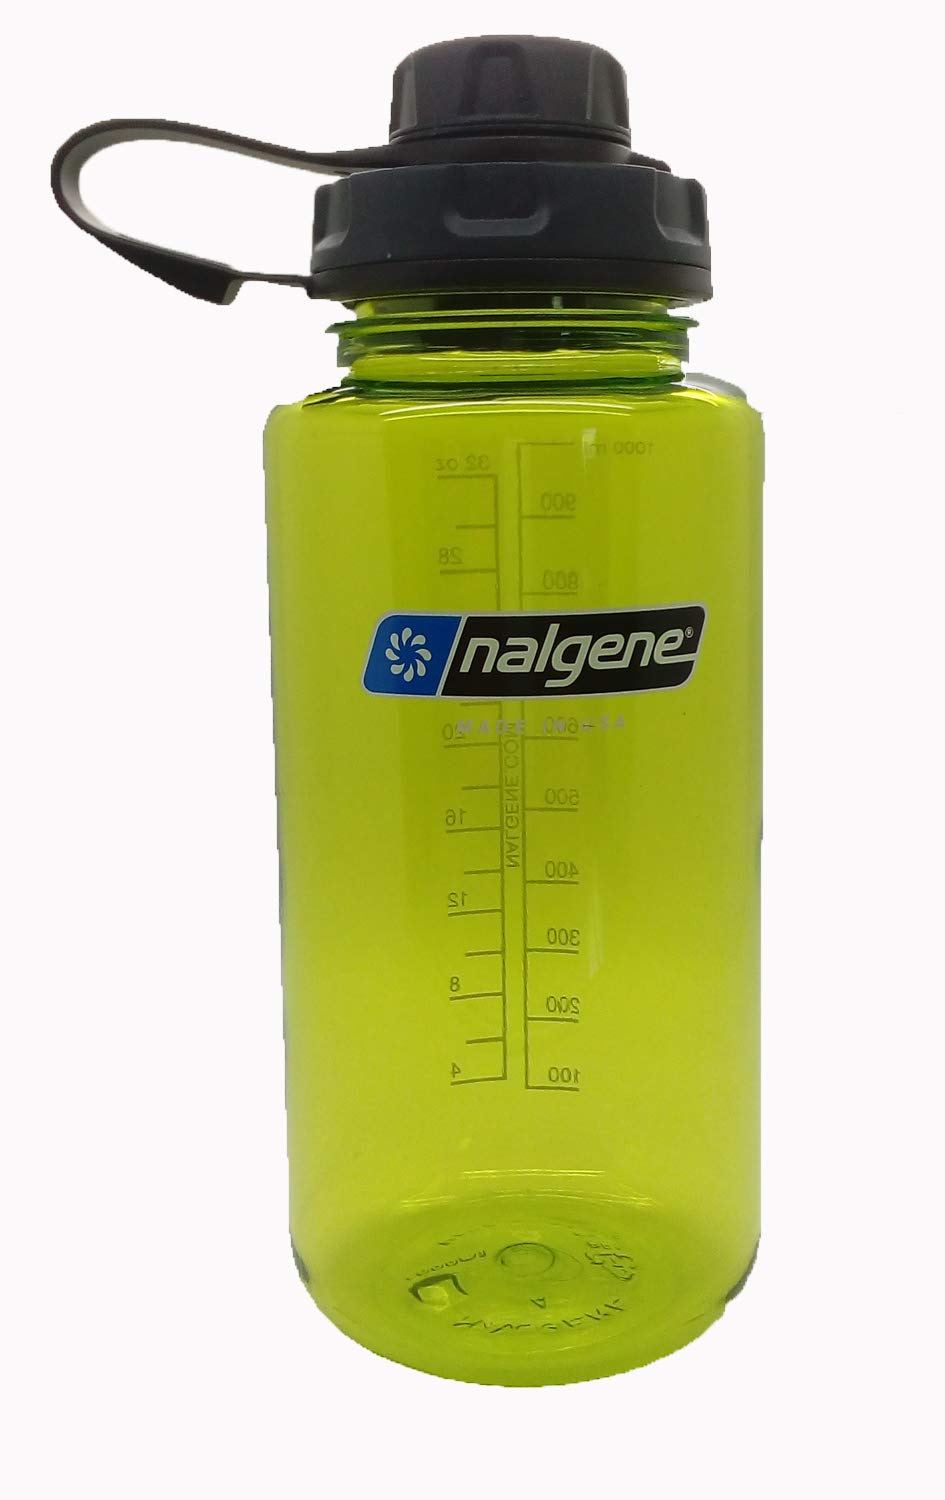 Nalgene Flasche 'Everyday Weithals' - 1 L, grün, capCAP'-schwarz